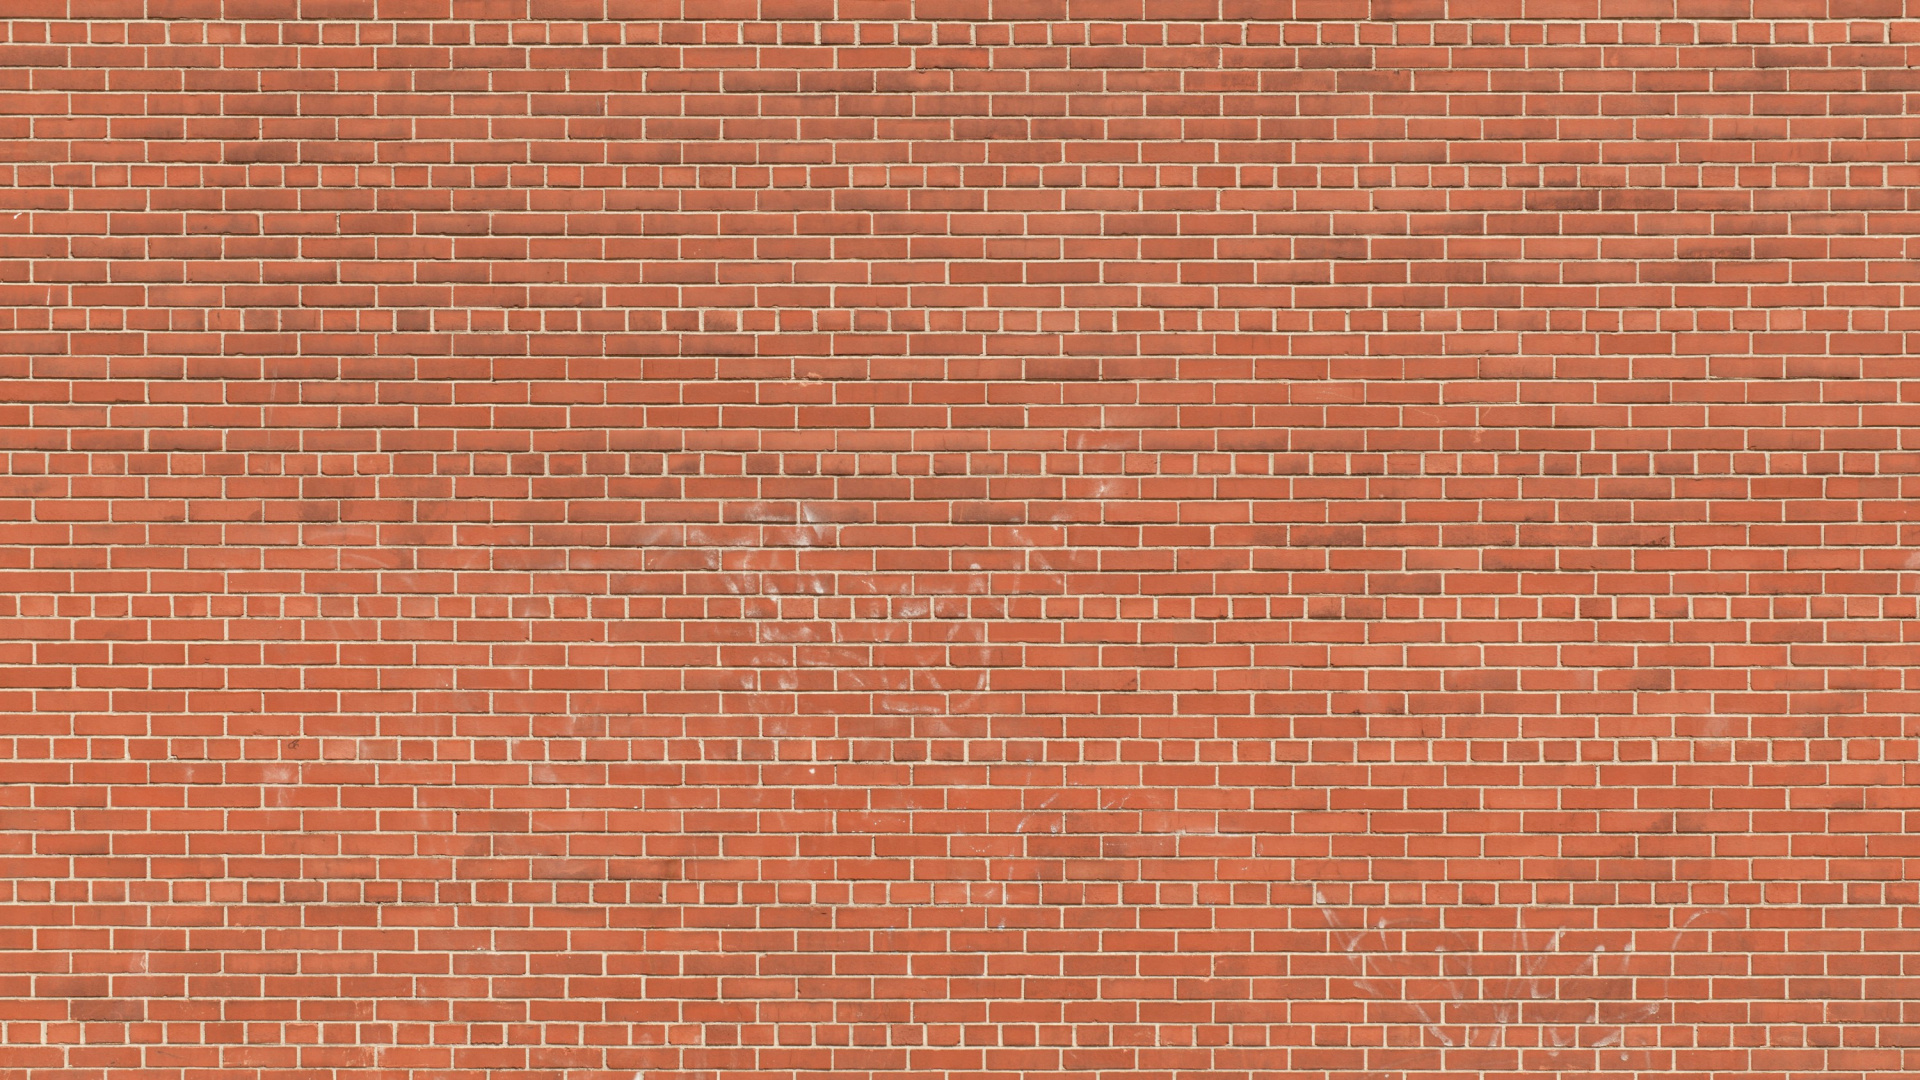 Mur de Briques Brunes Pendant la Journée. Wallpaper in 1920x1080 Resolution